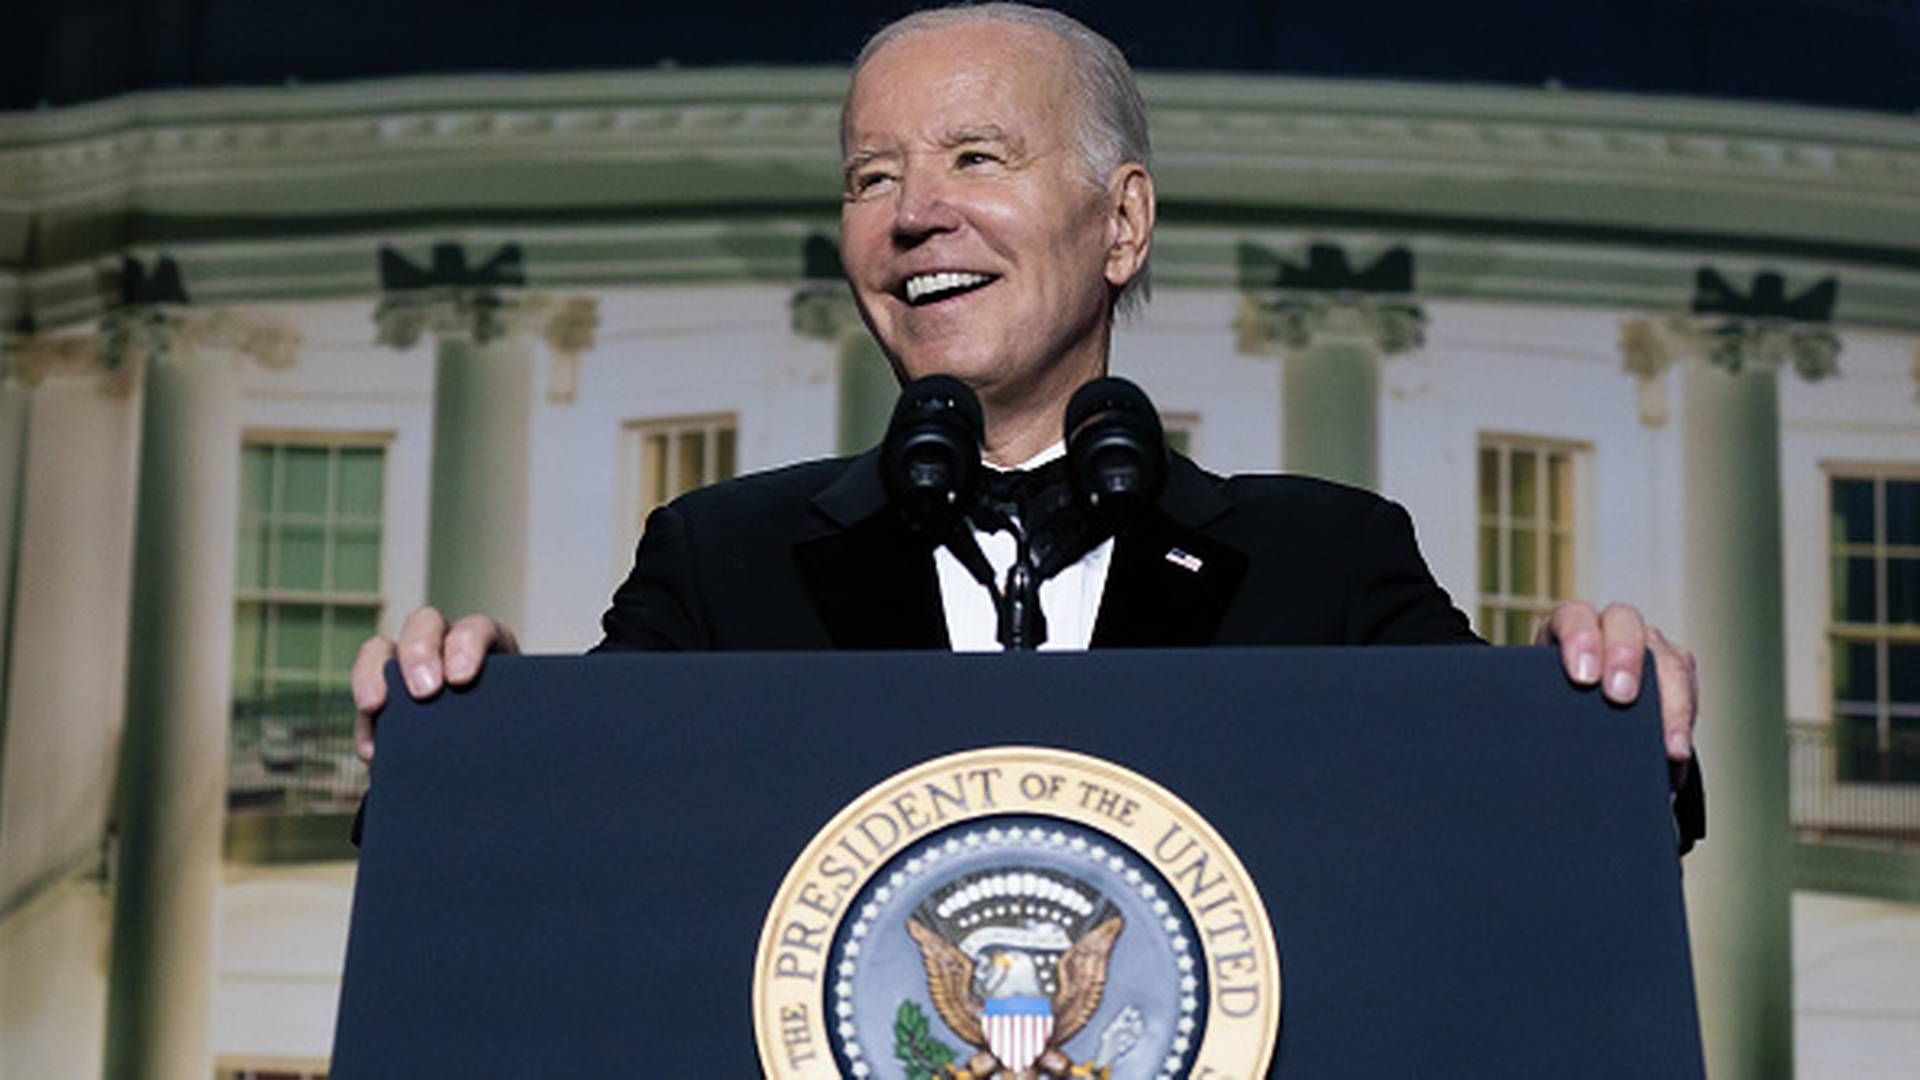 Joe Bidens standuptale analyseret. Det er ikke kun for sjov, men et vitalt forsøg på at få fire år mere som præsident ved at vise overskud. | Foto: Getty Images.